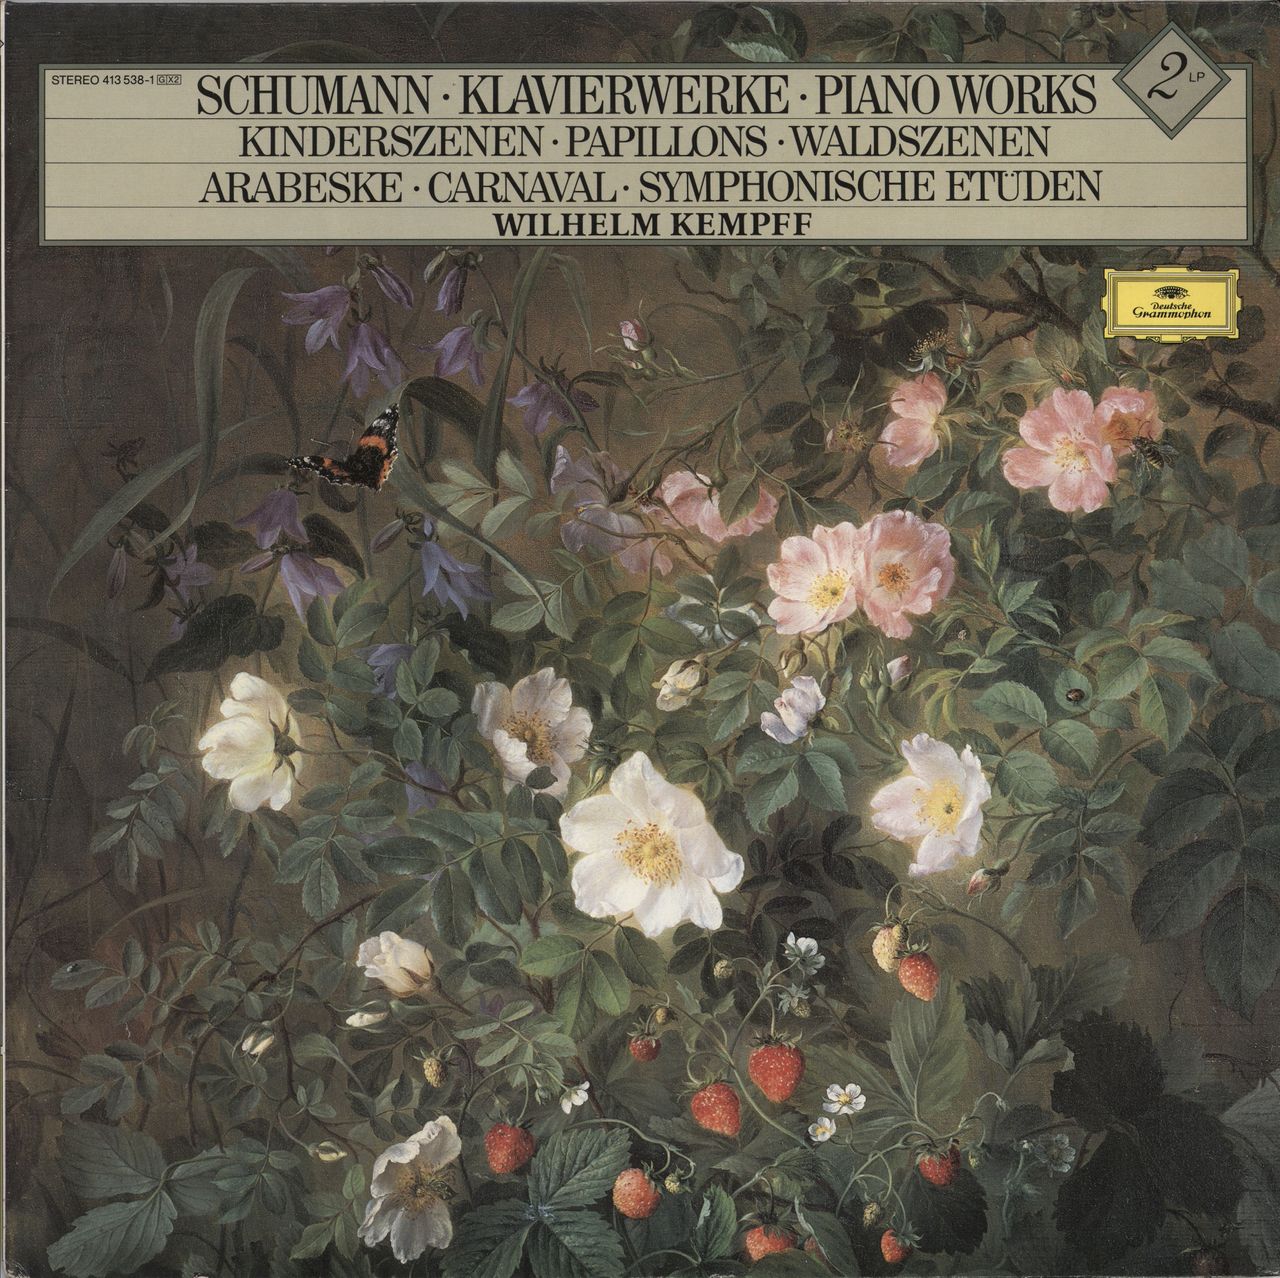 Wilhelm Kempff Schumann: Klavierwerke German 2-LP vinyl record set (Double LP Album) 413538-1